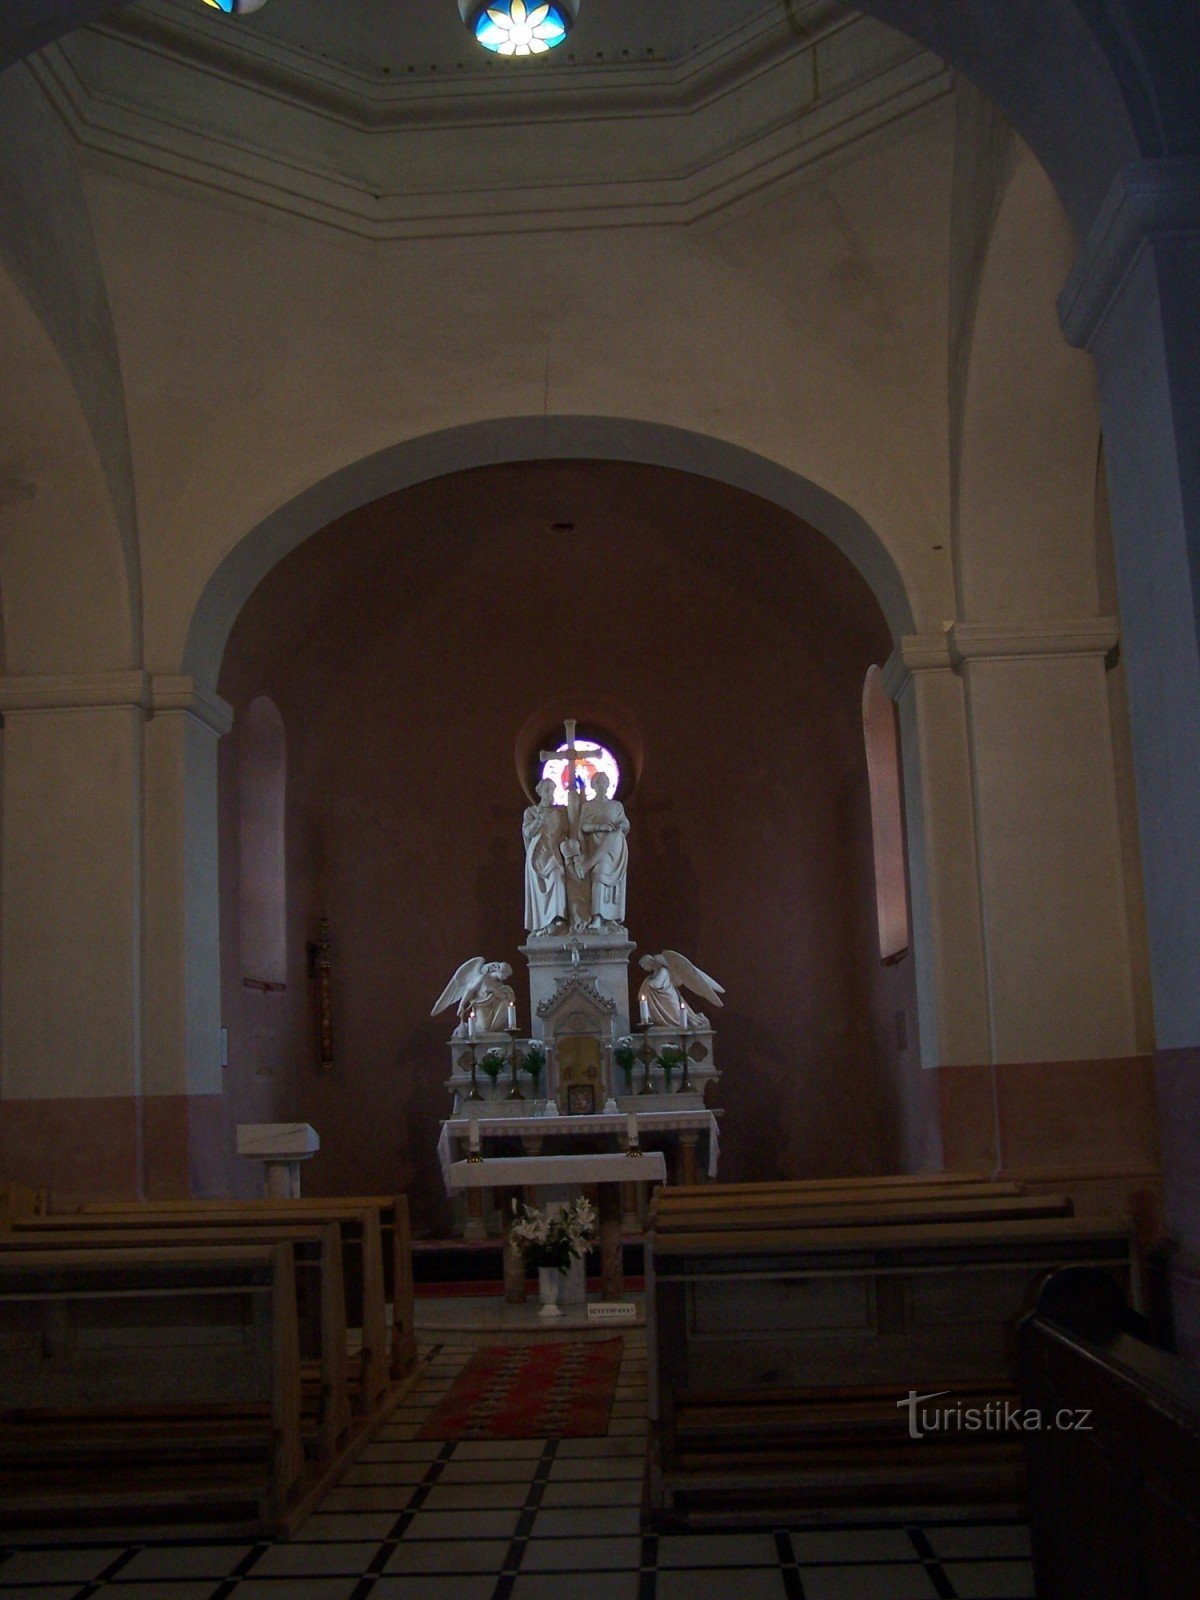 indre af kapellet i Radhoště